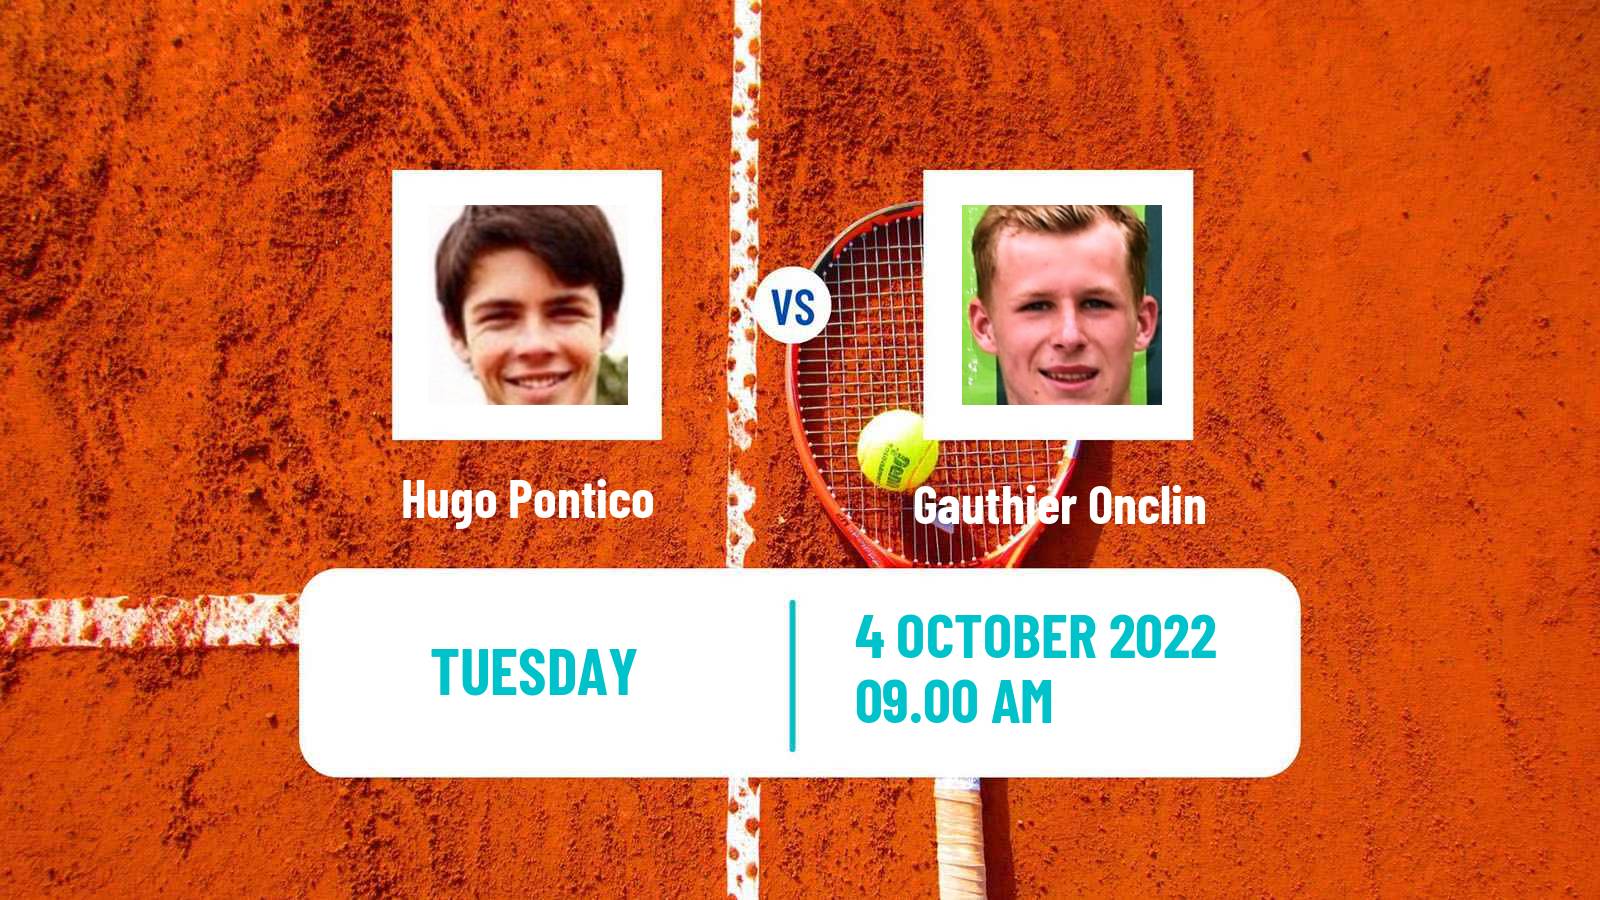 Tennis ITF Tournaments Hugo Pontico - Gauthier Onclin